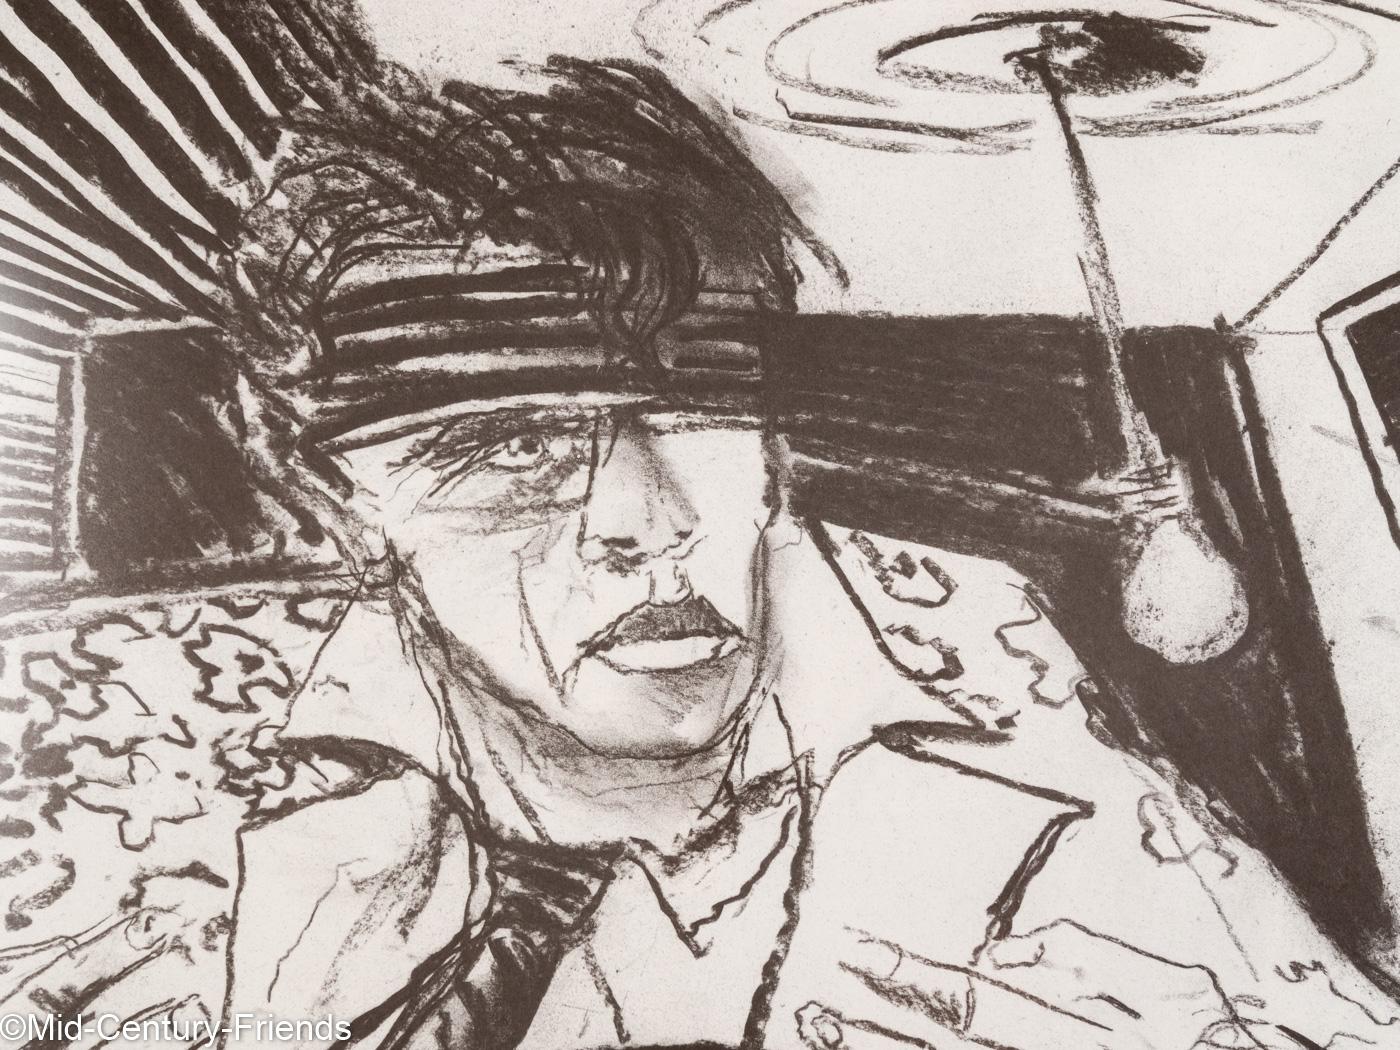 Dees DE BRUYNE Porträt eines alten Mannes mit Hut durch eine verzerrte Perspektive. S/W Offsetdruck auf dickem Papier. Nummeriert (IX/ XXI) und signiert. Aufhängefertig, gerahmt mit Passepartout in einem Echtholz-Bilderrahmen in Schwarz hinter